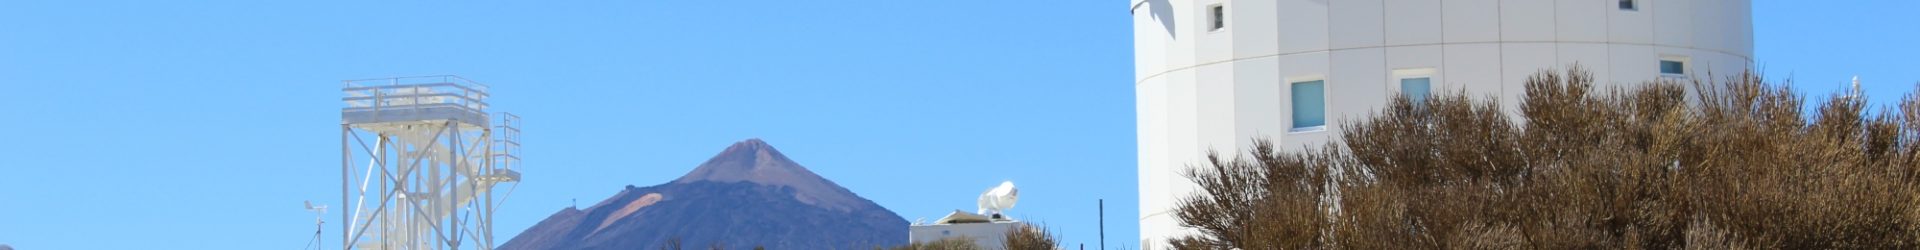 Besuch im Observatorium auf Teneriffa